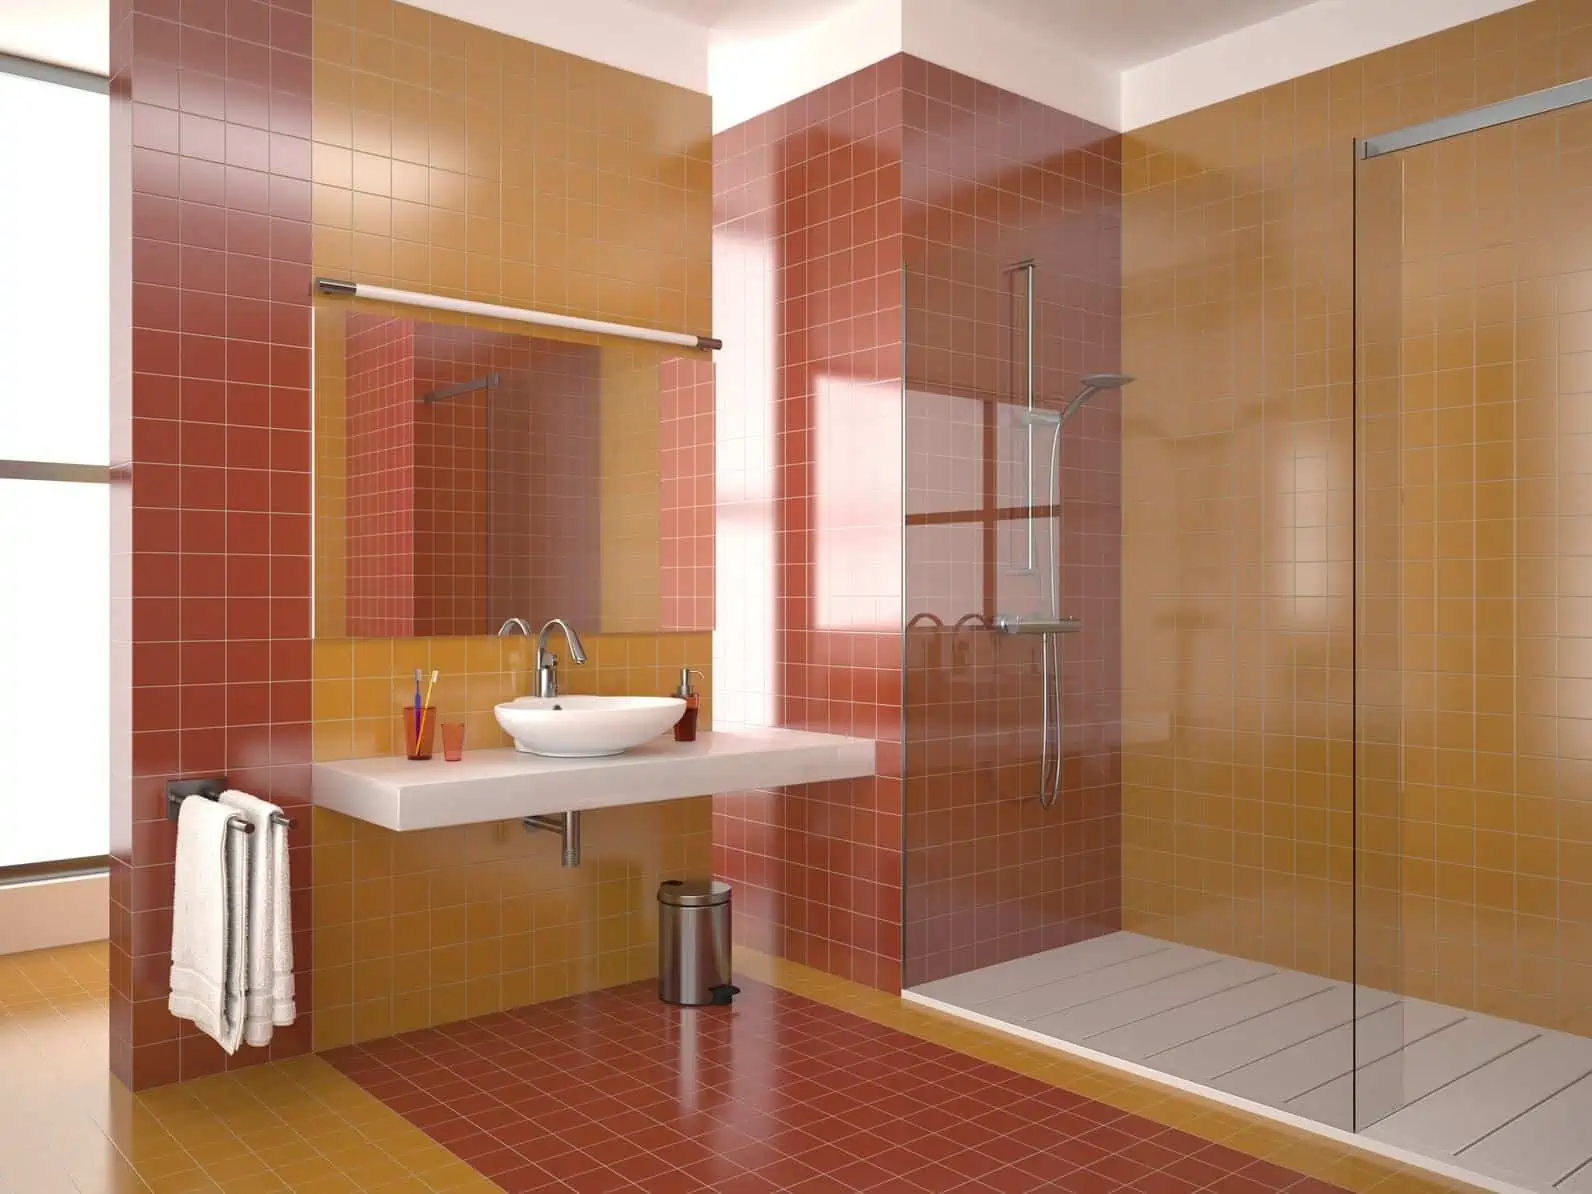 Exemple de douche italienne avec carrelage rouge et jaune